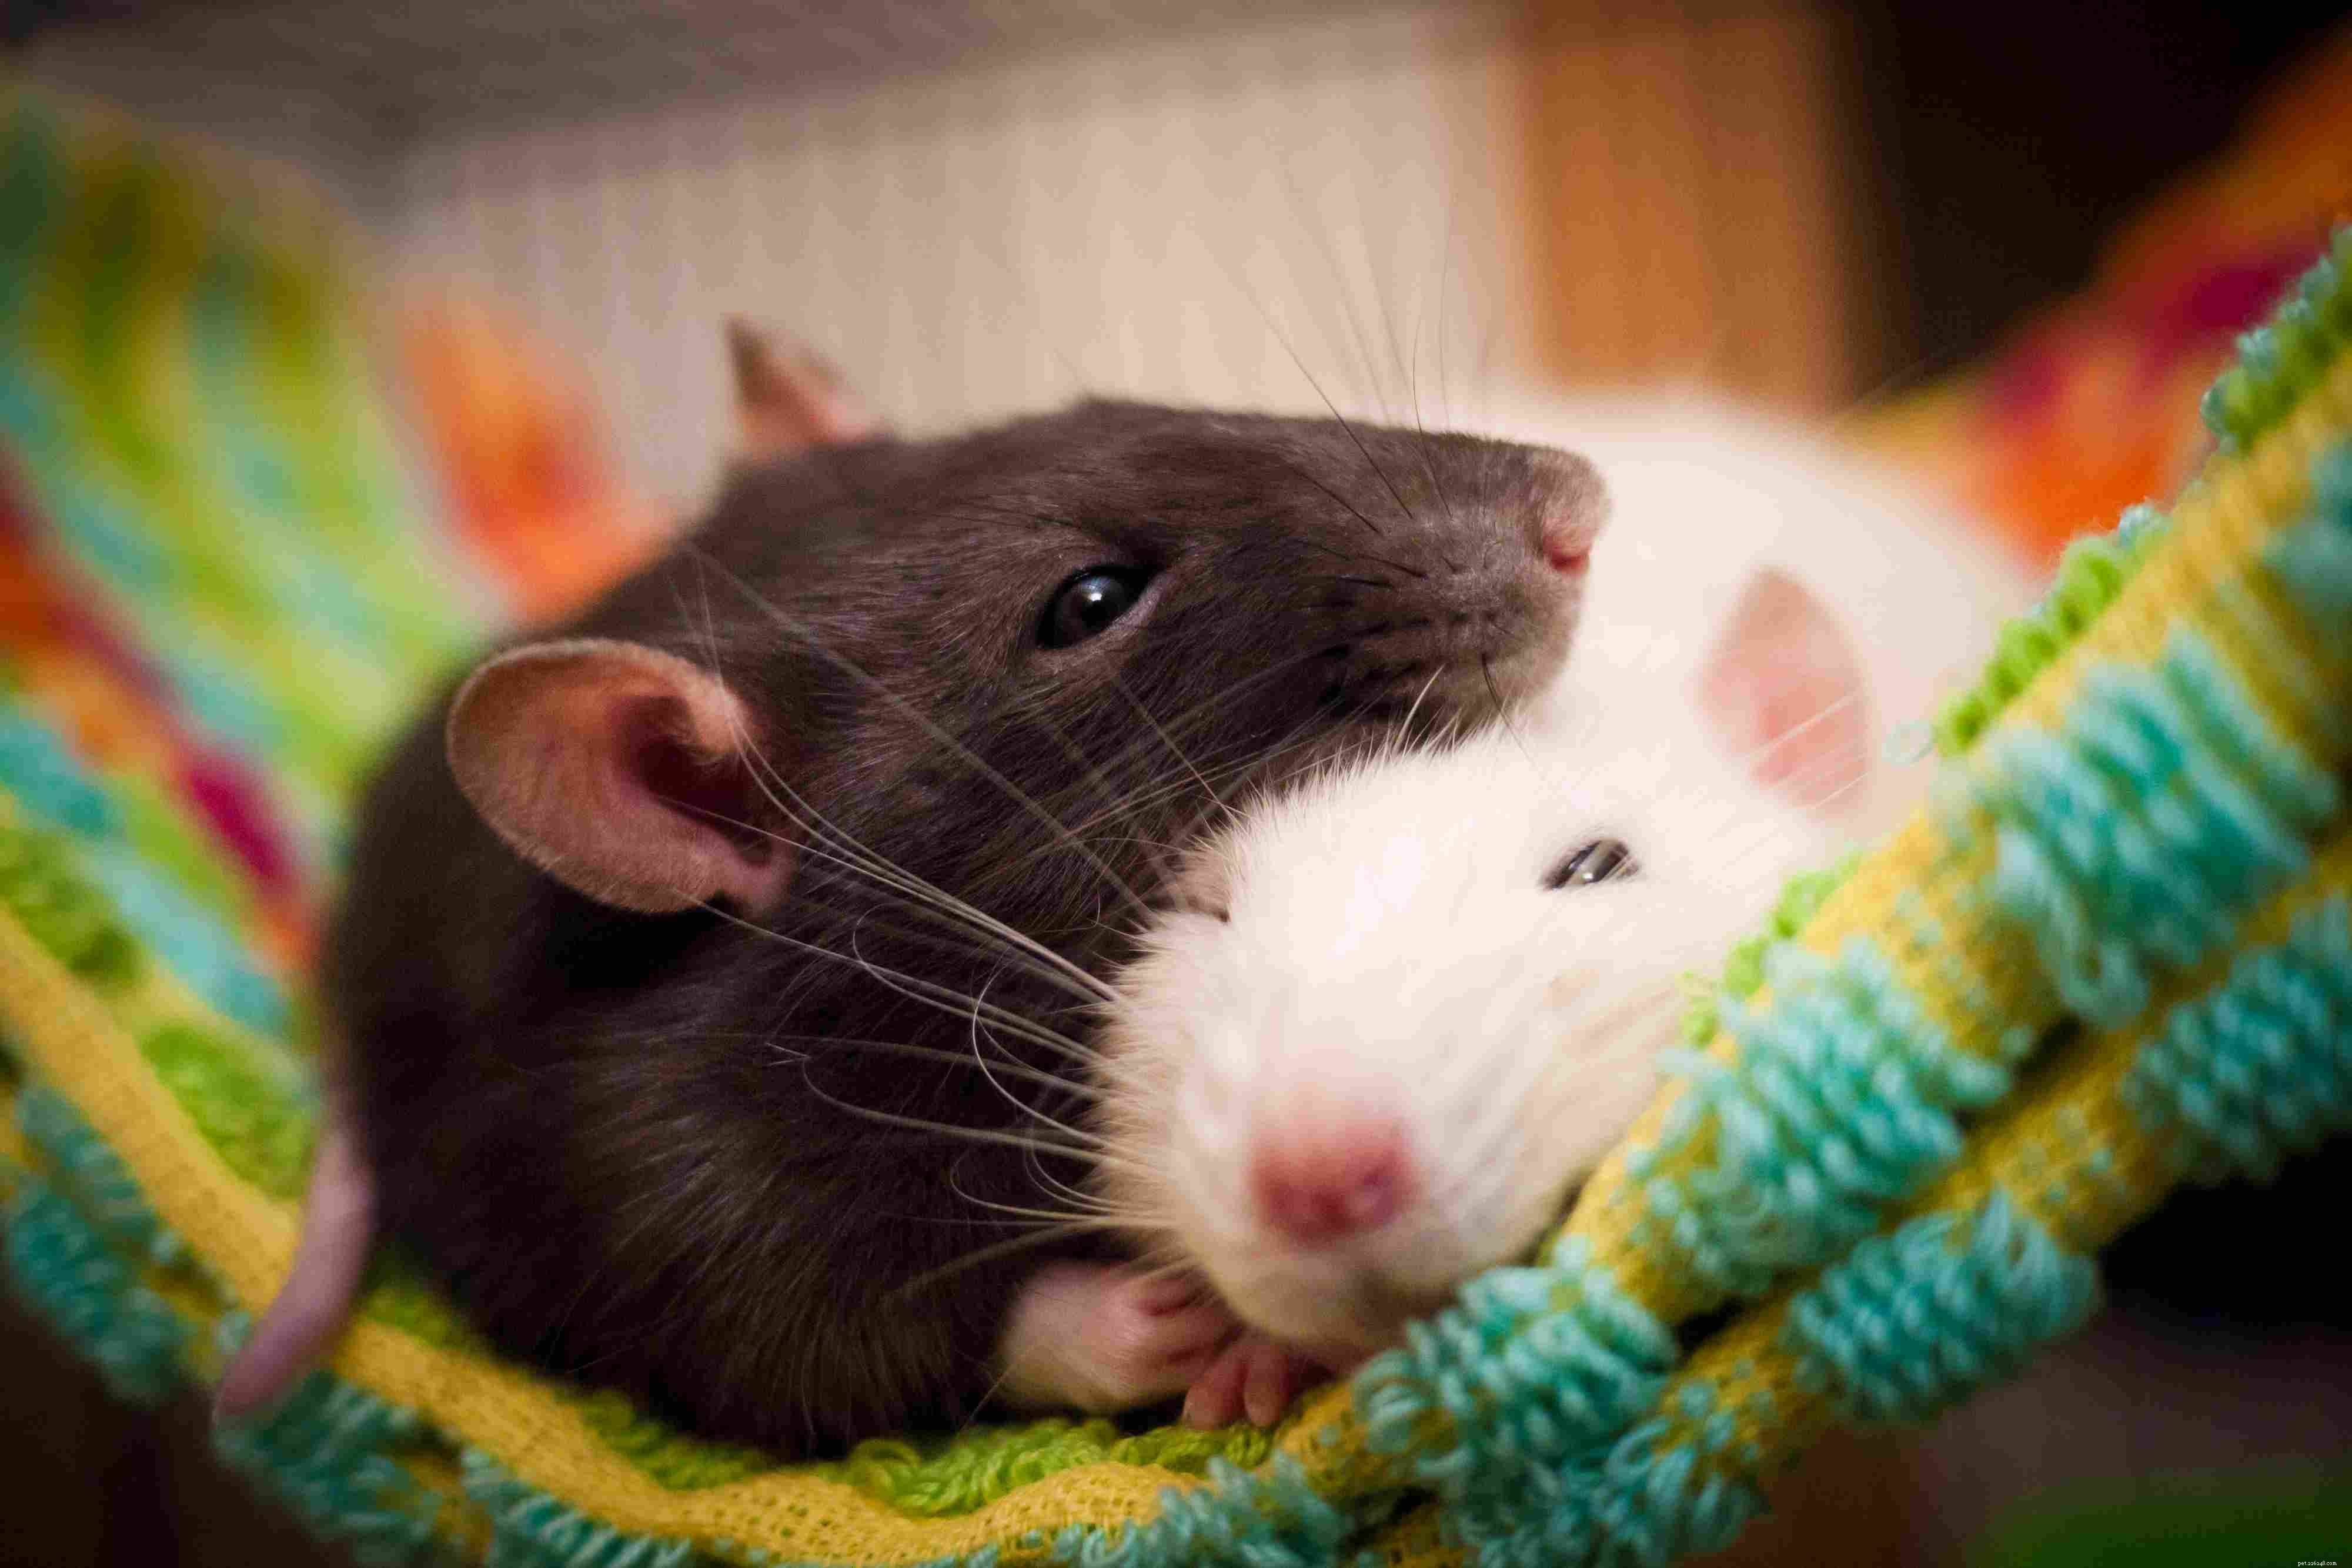 Rattenpersoonlijkheid, intelligentie en zorgzaamheid